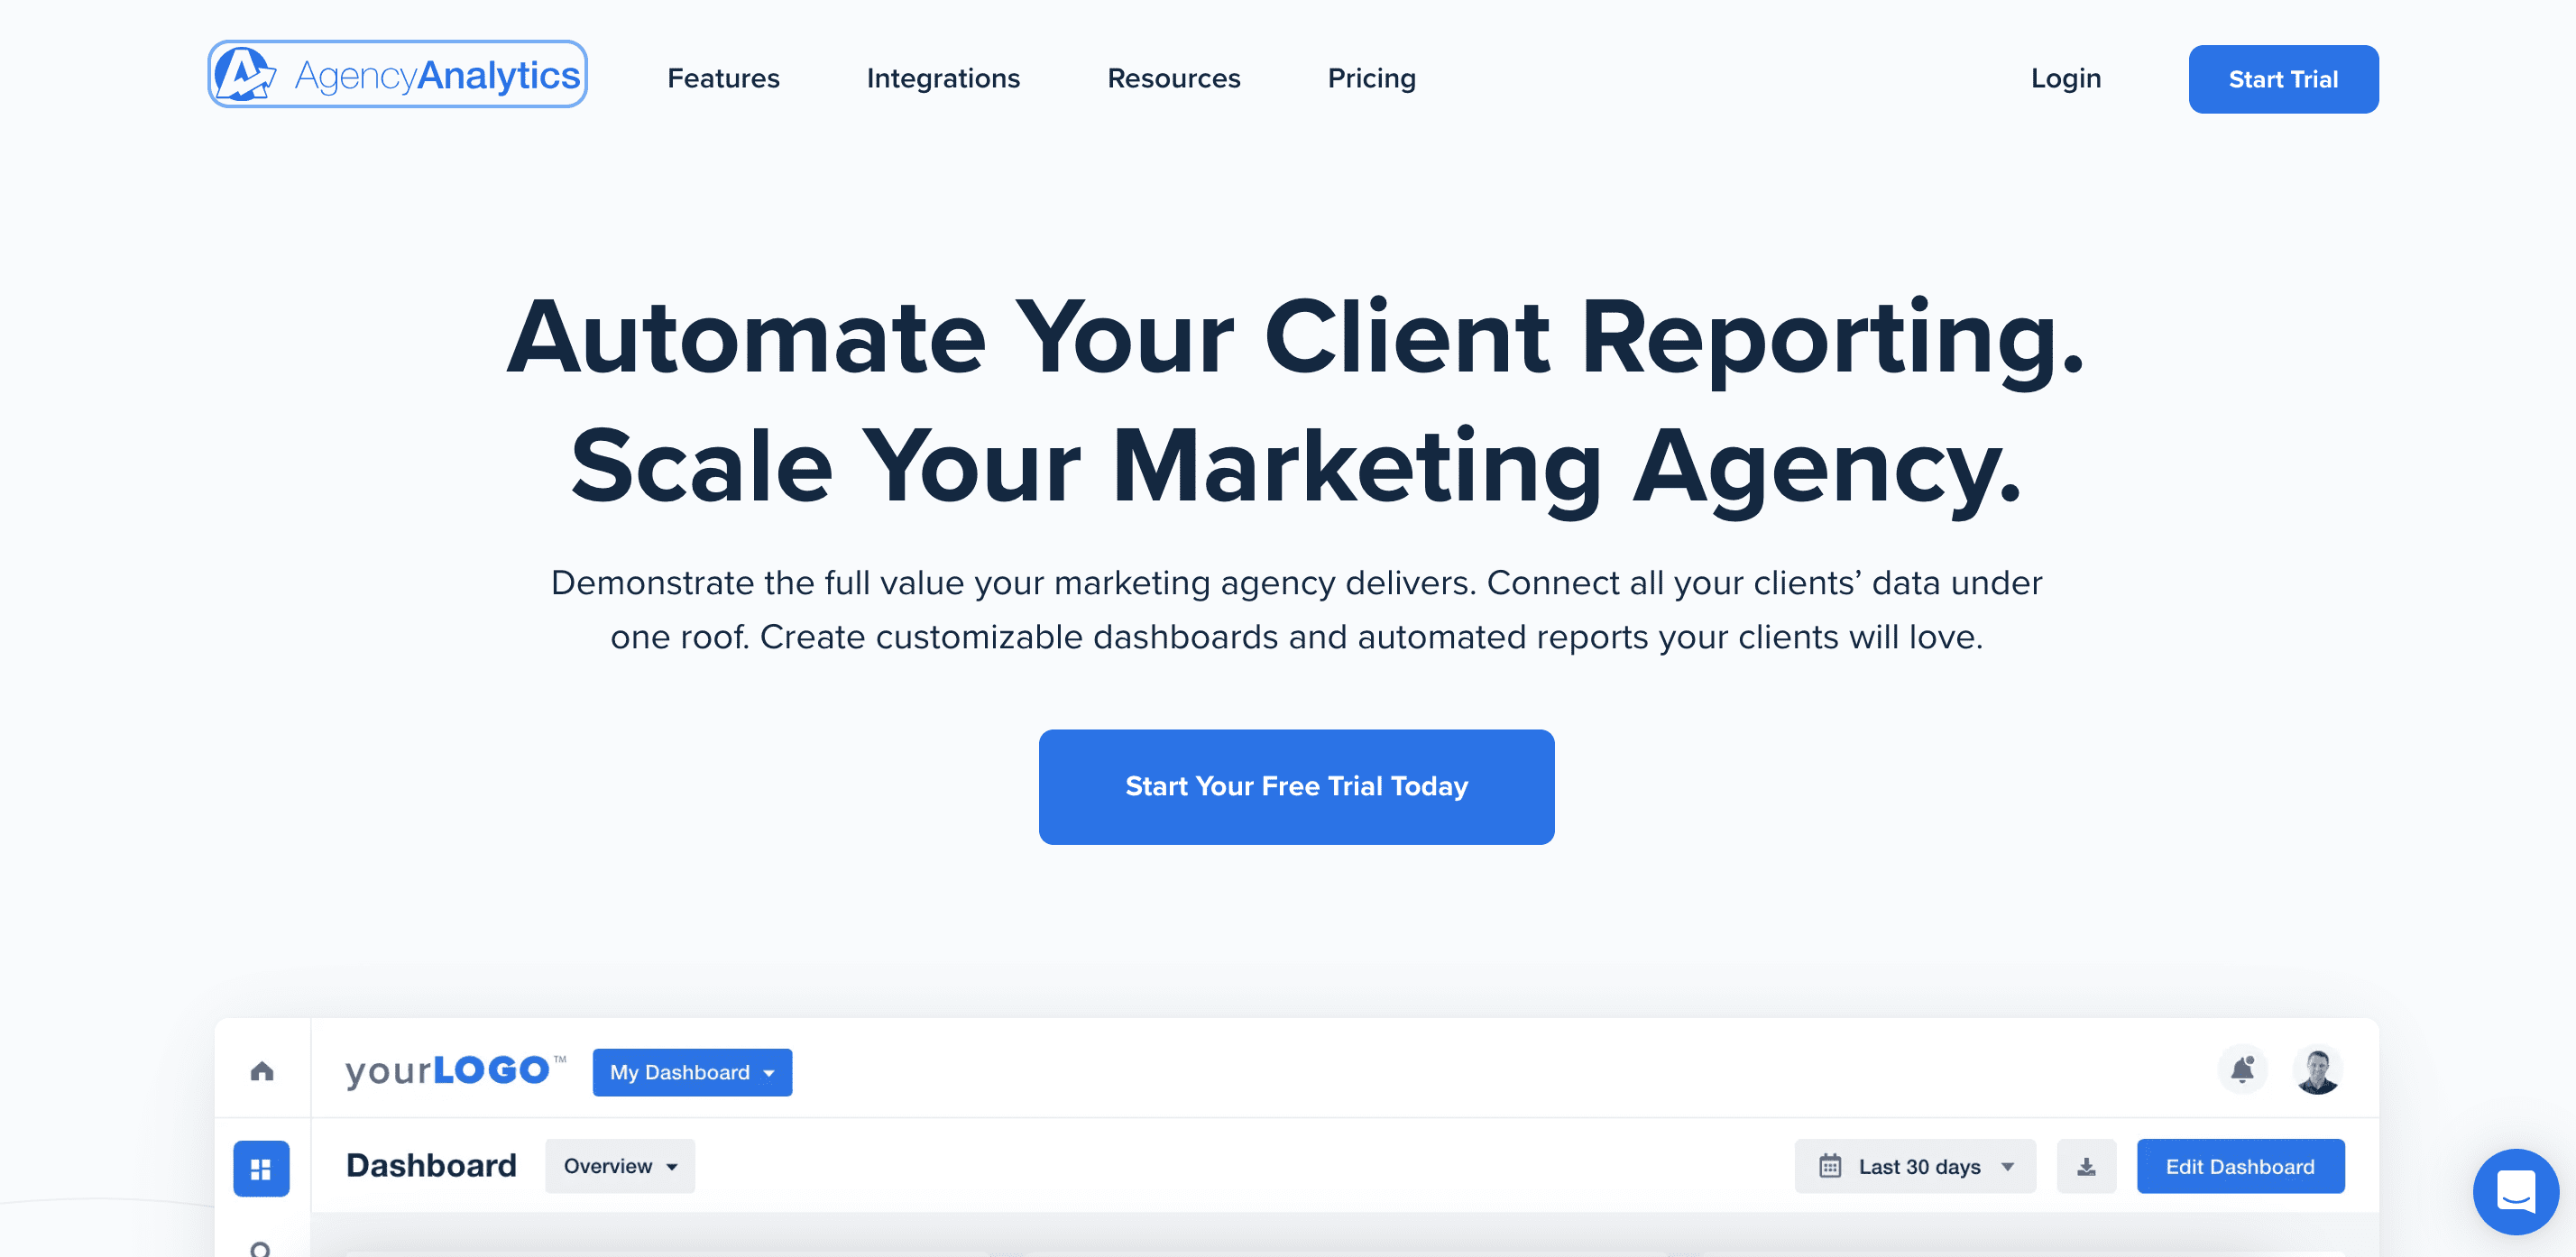 AgencyAnalytics' homepage